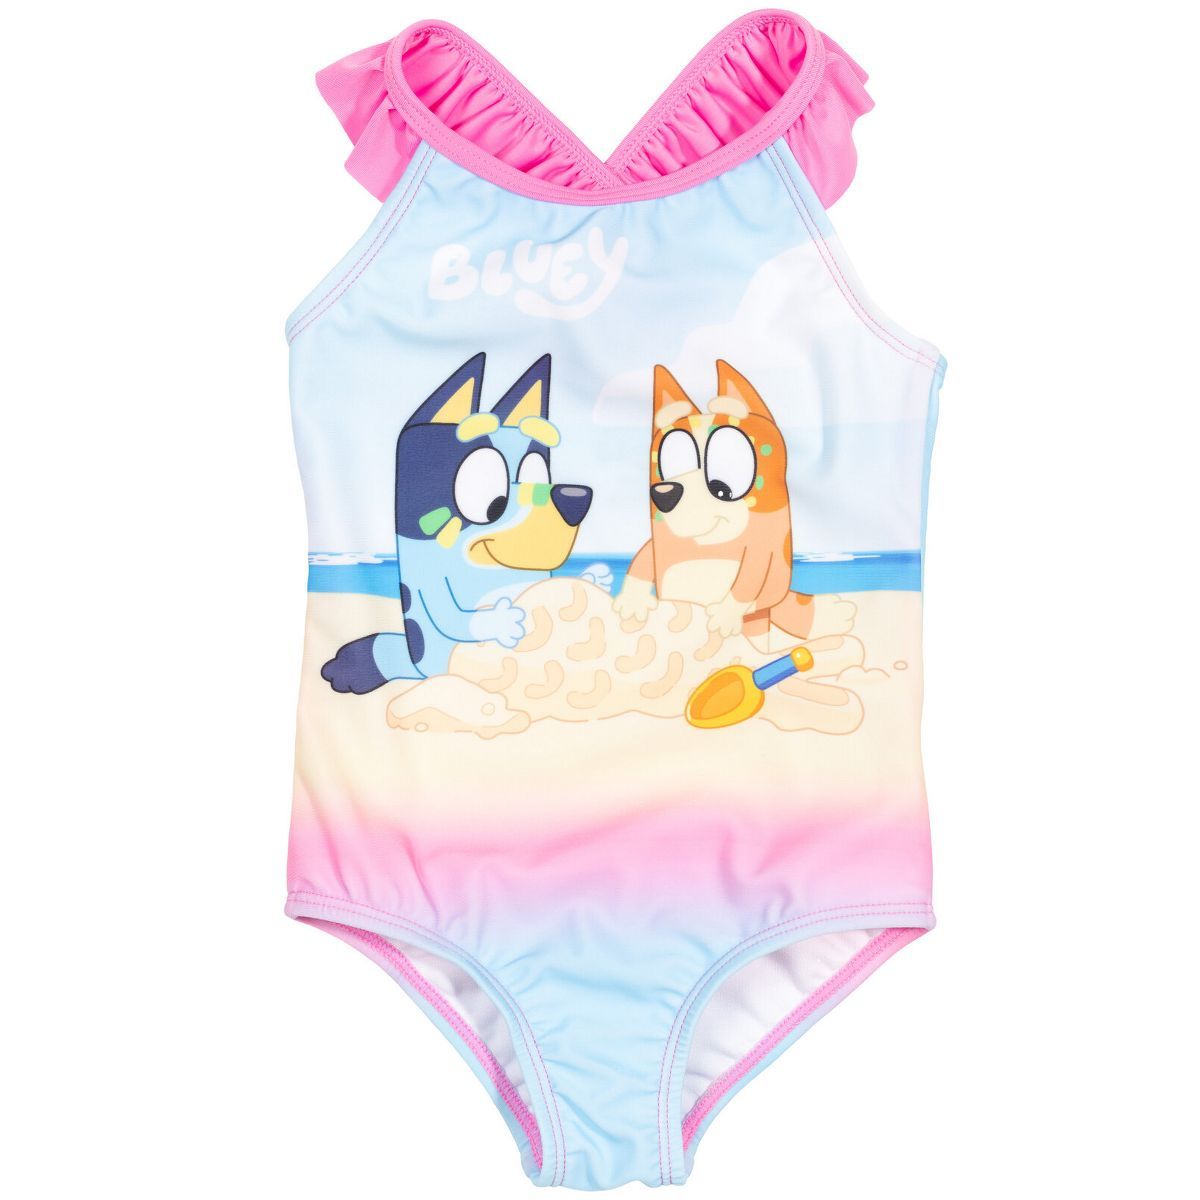 Bluey Bingo Bluey Girls One Piece Bathing Suit Toddler | Target